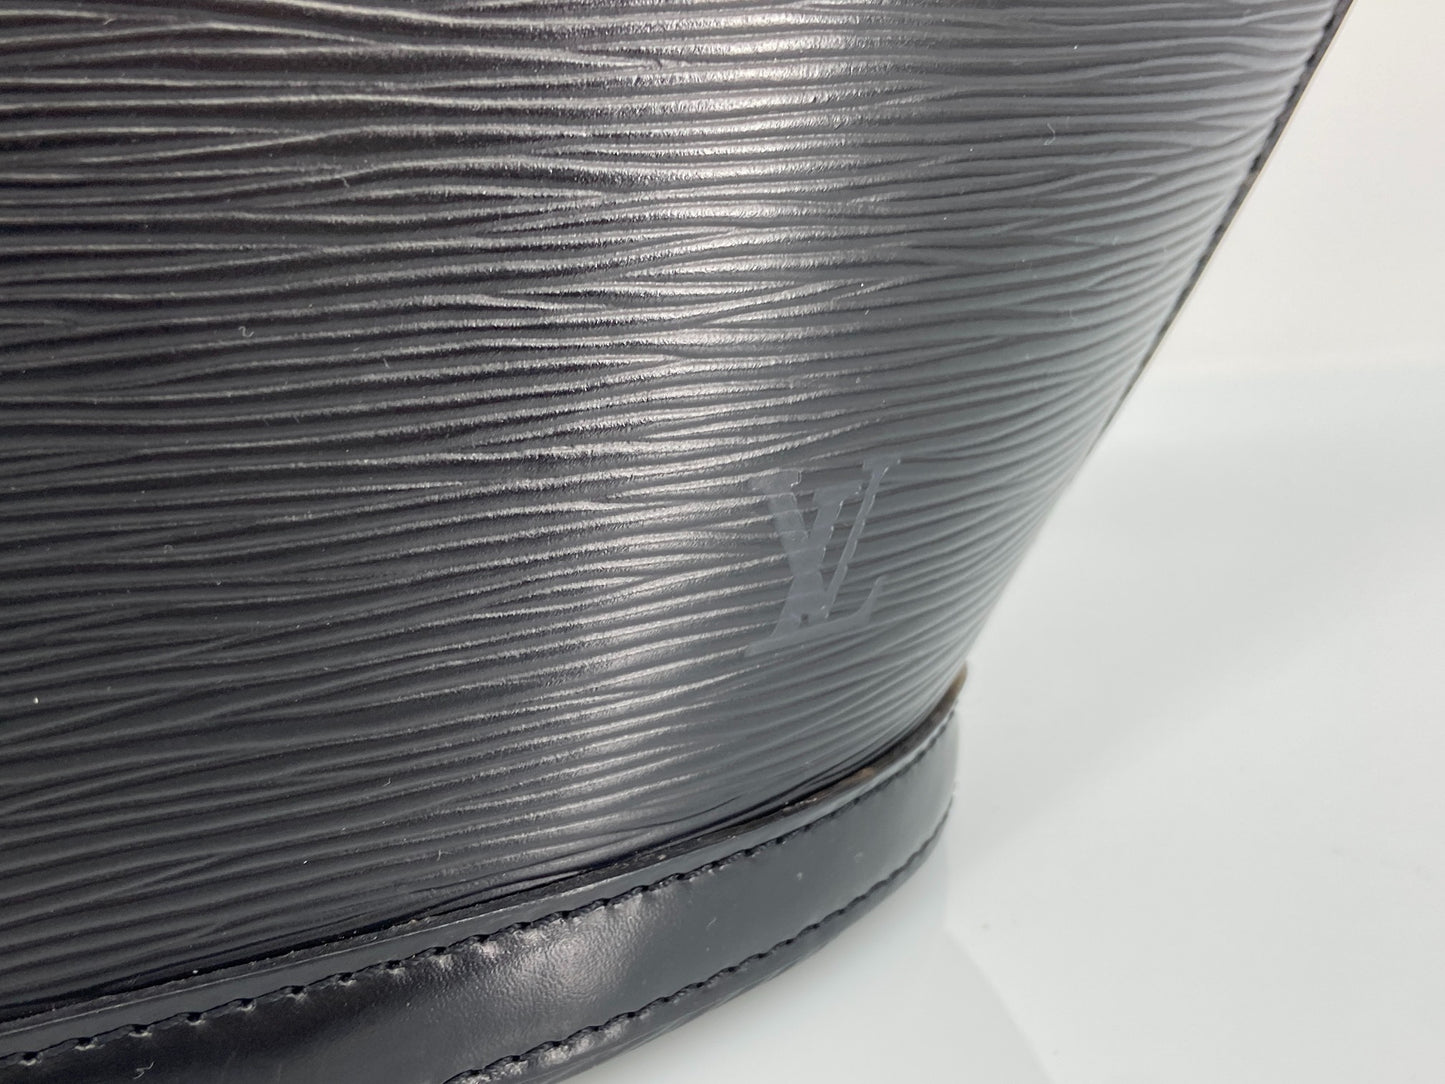 Louis Vuitton Saint Jacques Black Epi Leather